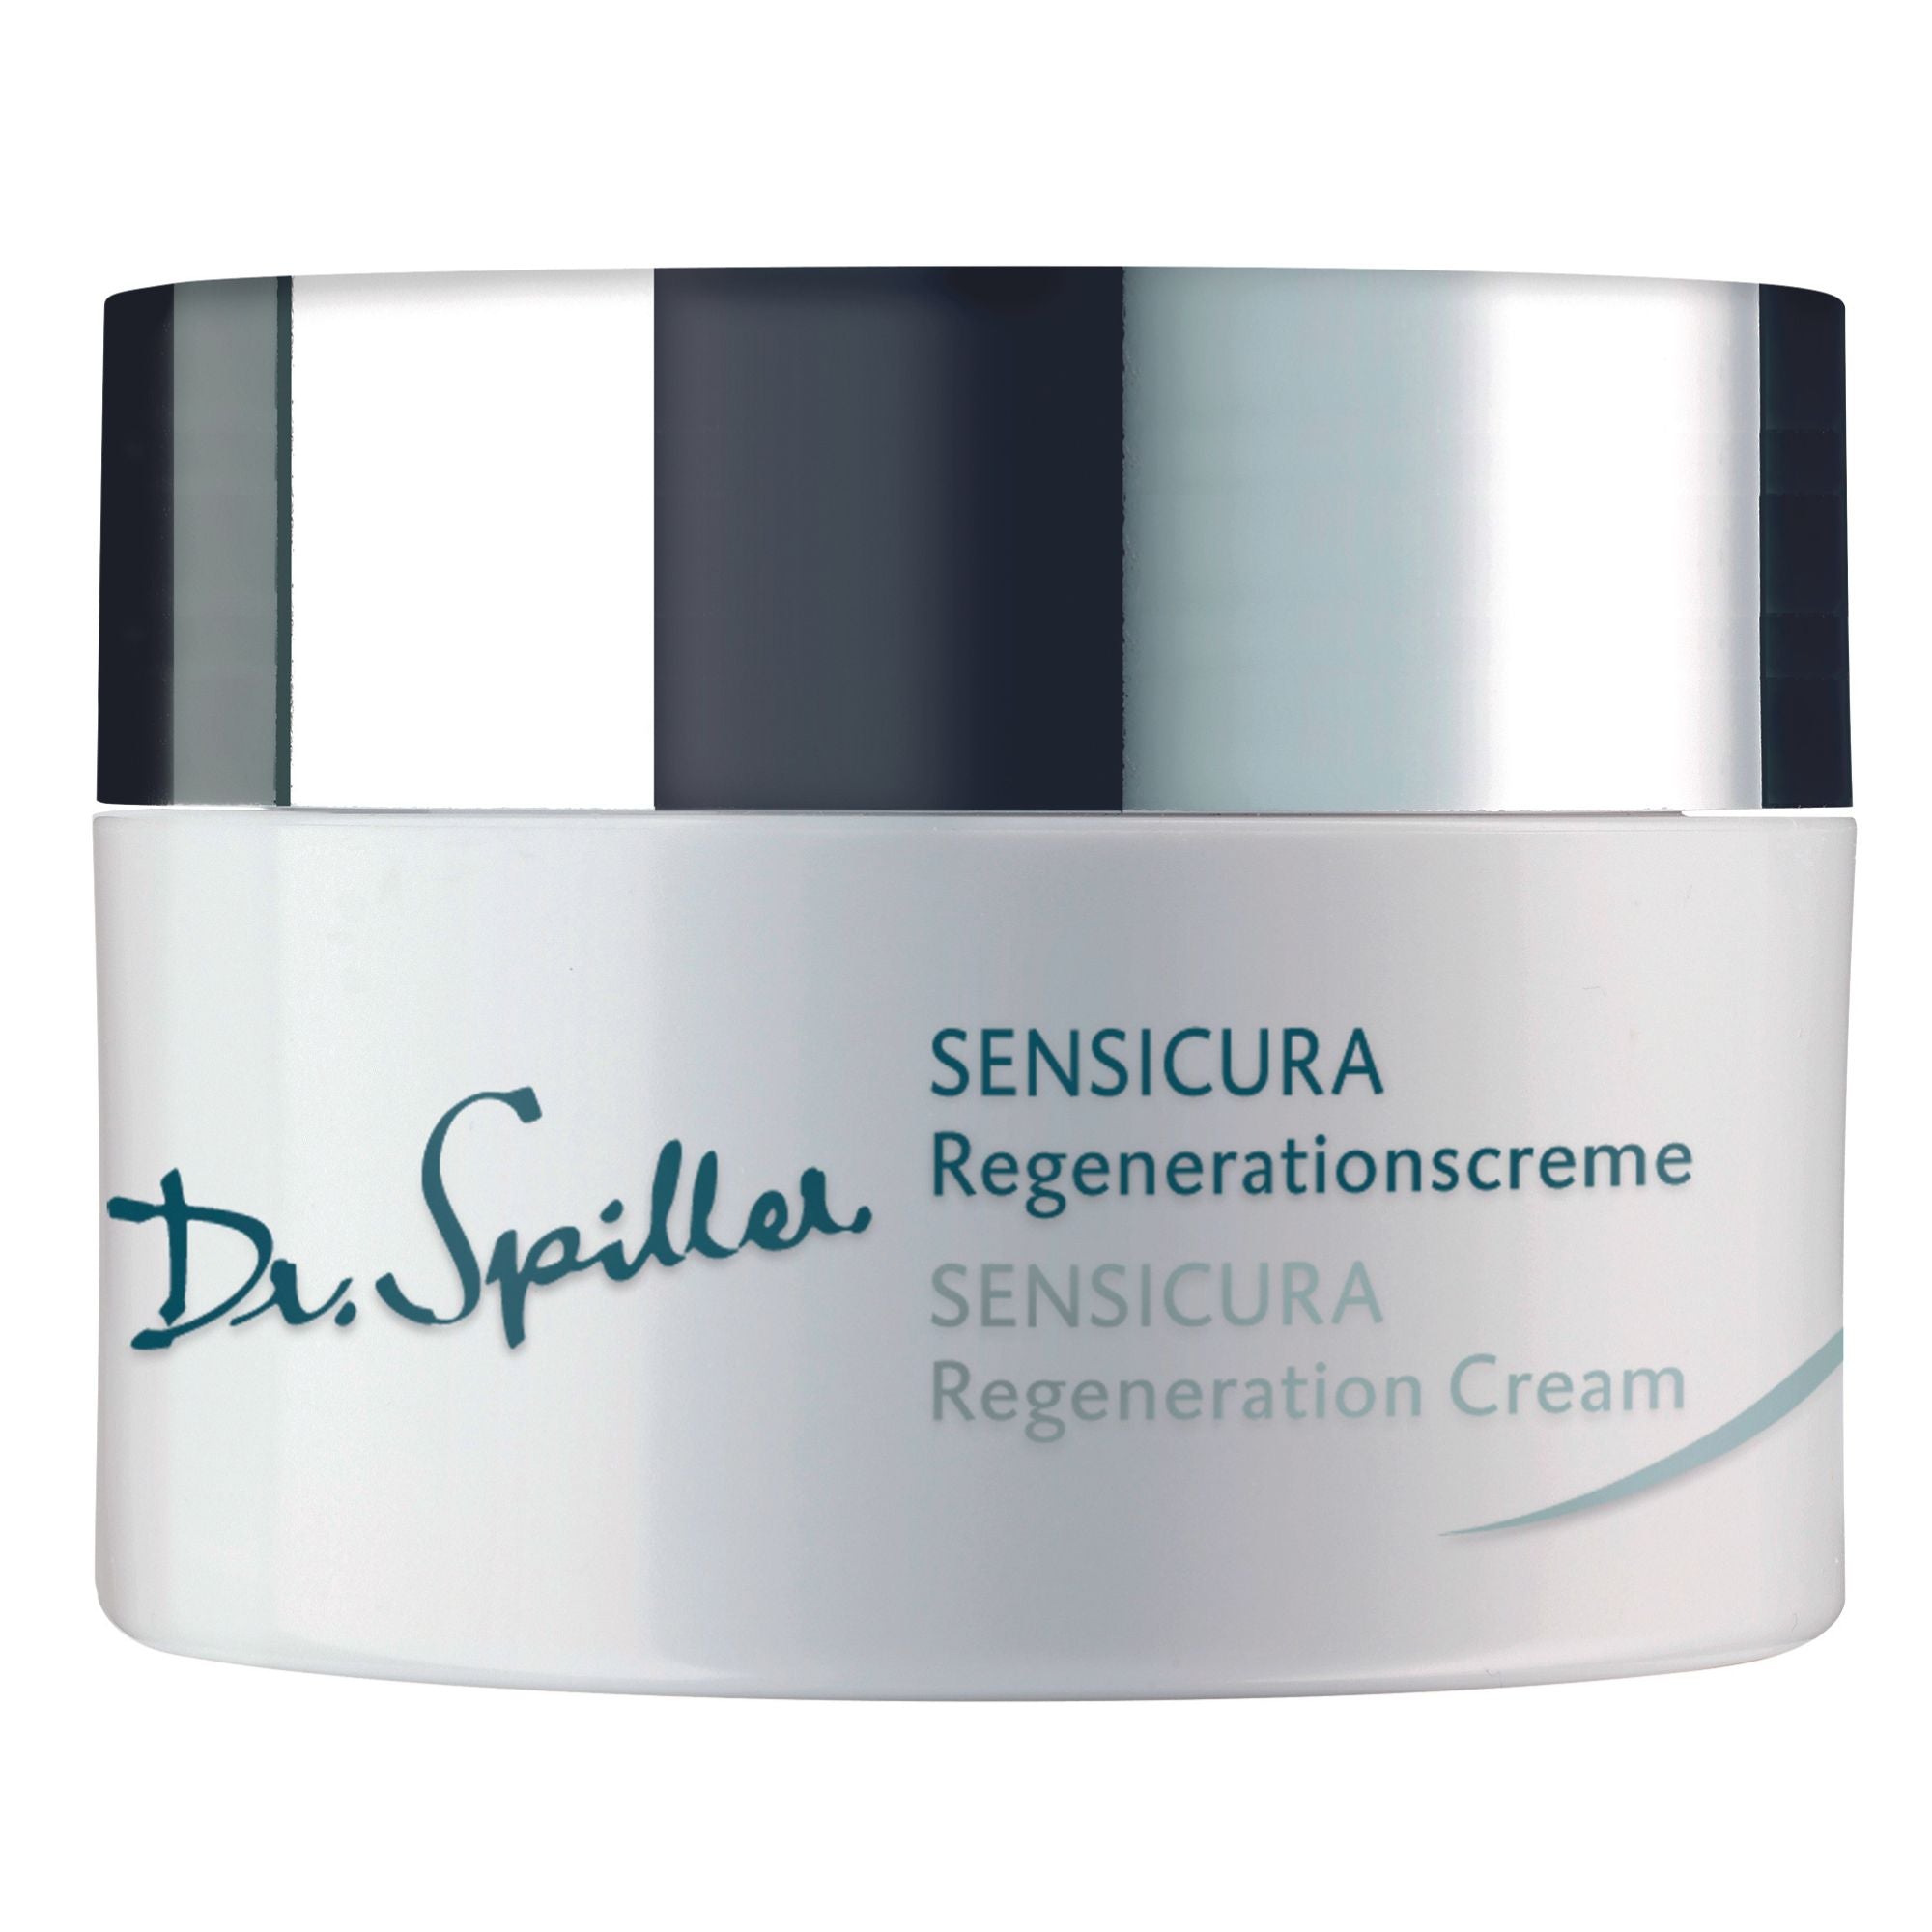 Dr. Spiller SENSICURA Regenerationscreme (50ml)